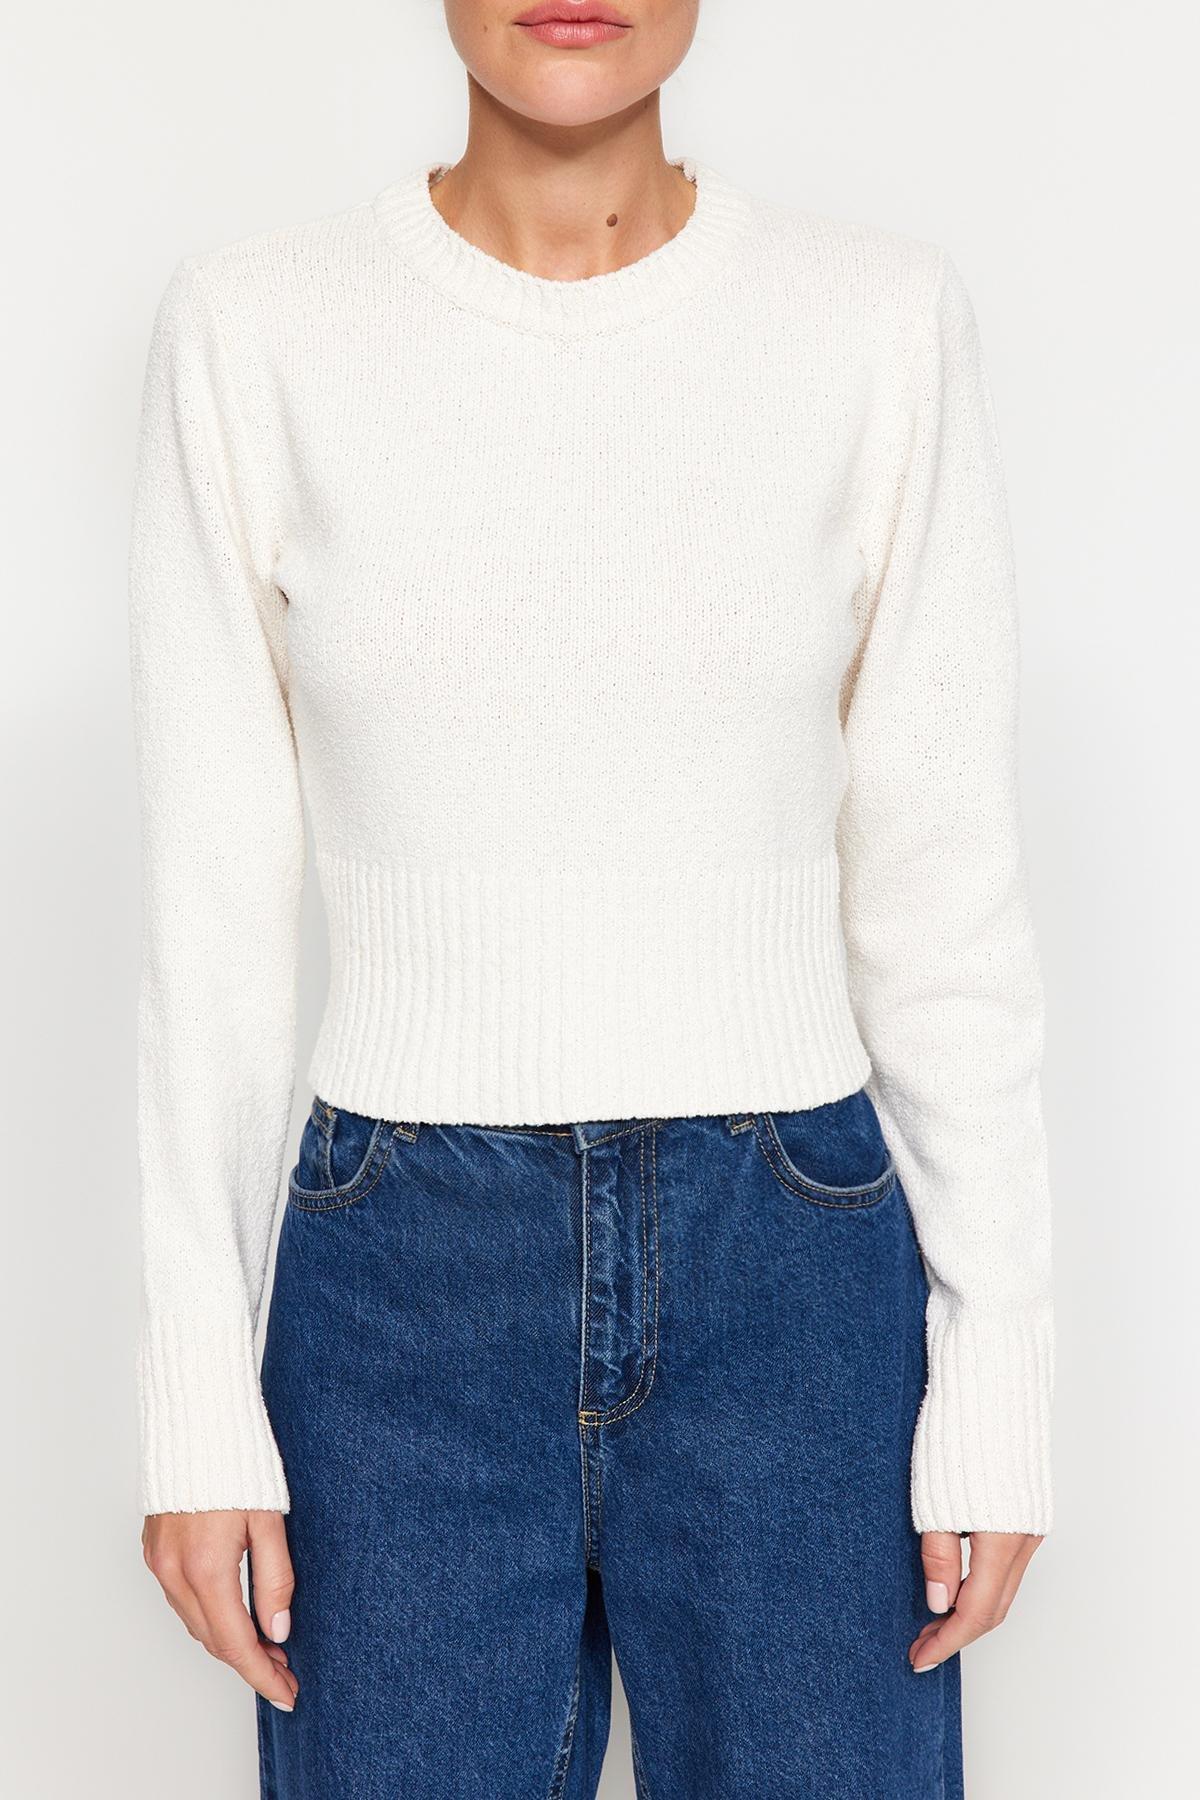 Trendyol - White Knitwear Sweater